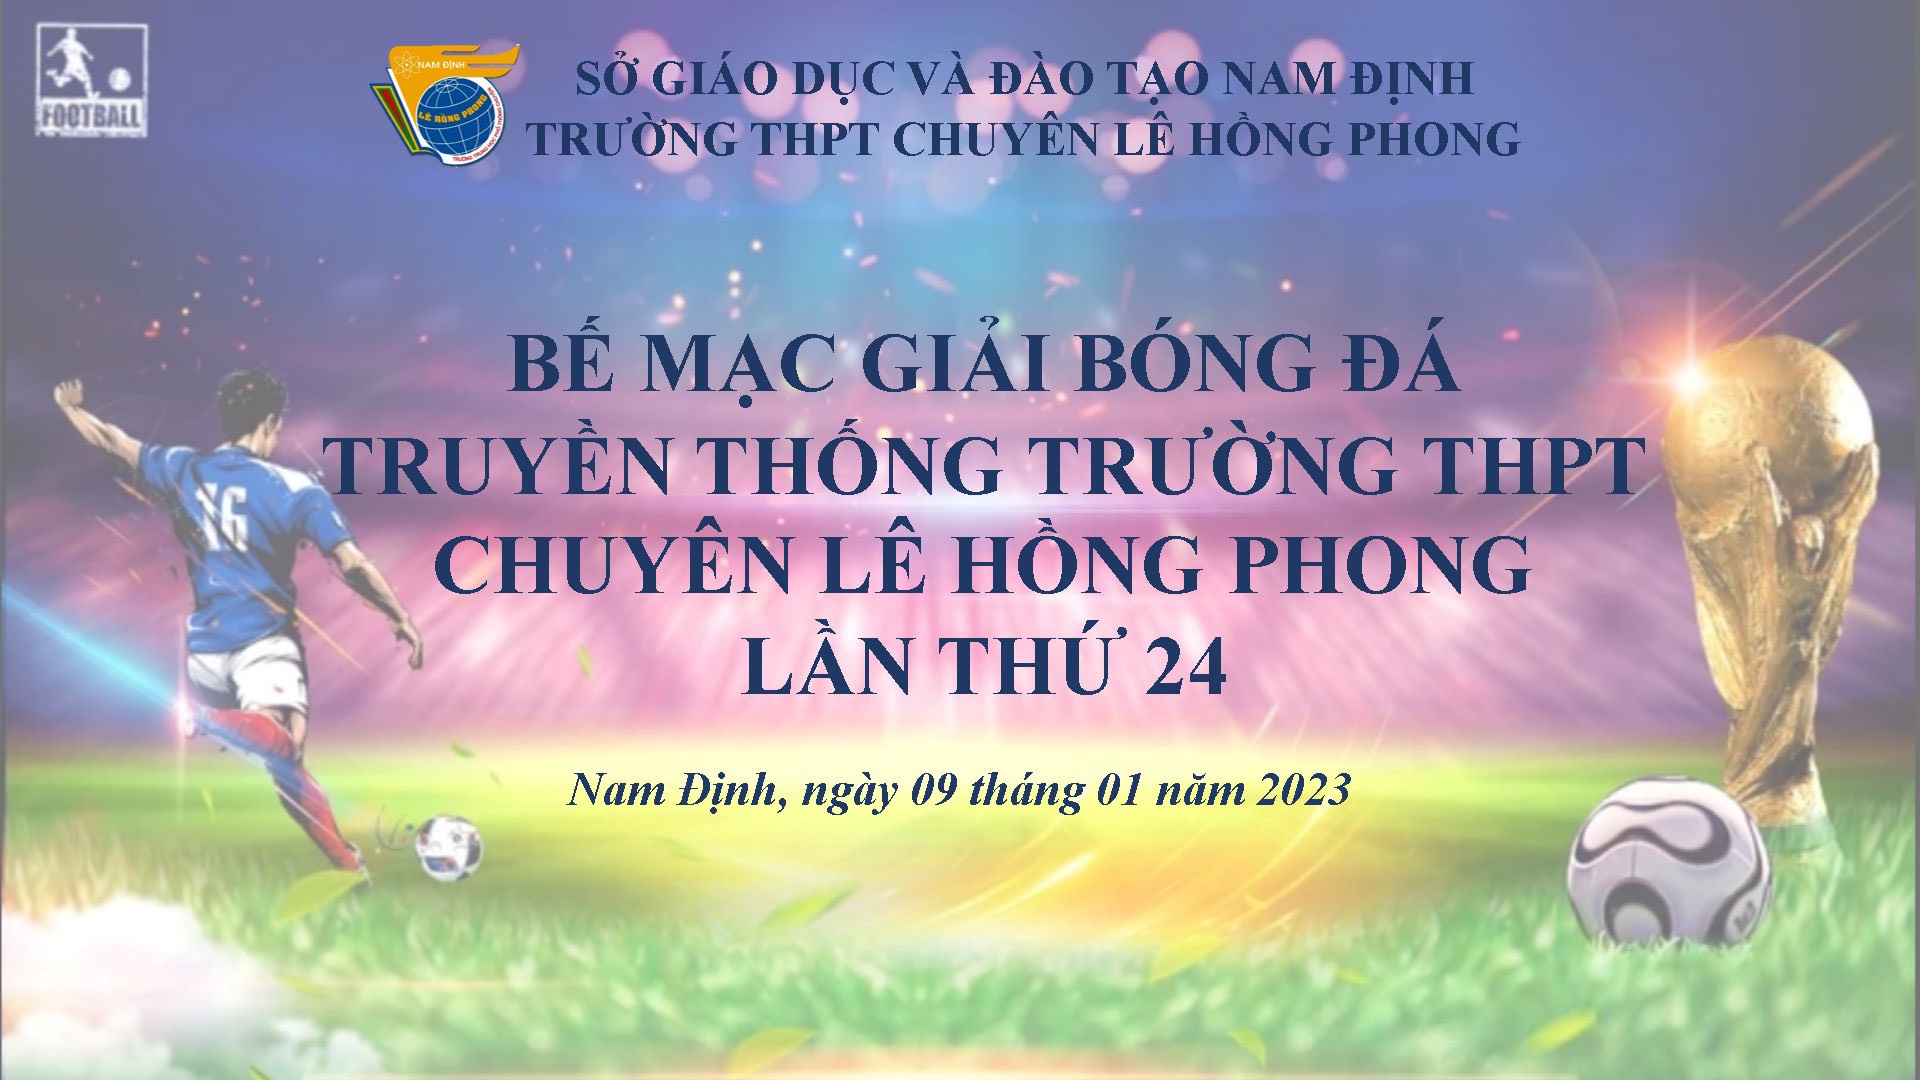 Bế mạc giải bóng đá truyền thống trường THPT chuyên Lê Hồng Phong lần thứ 24